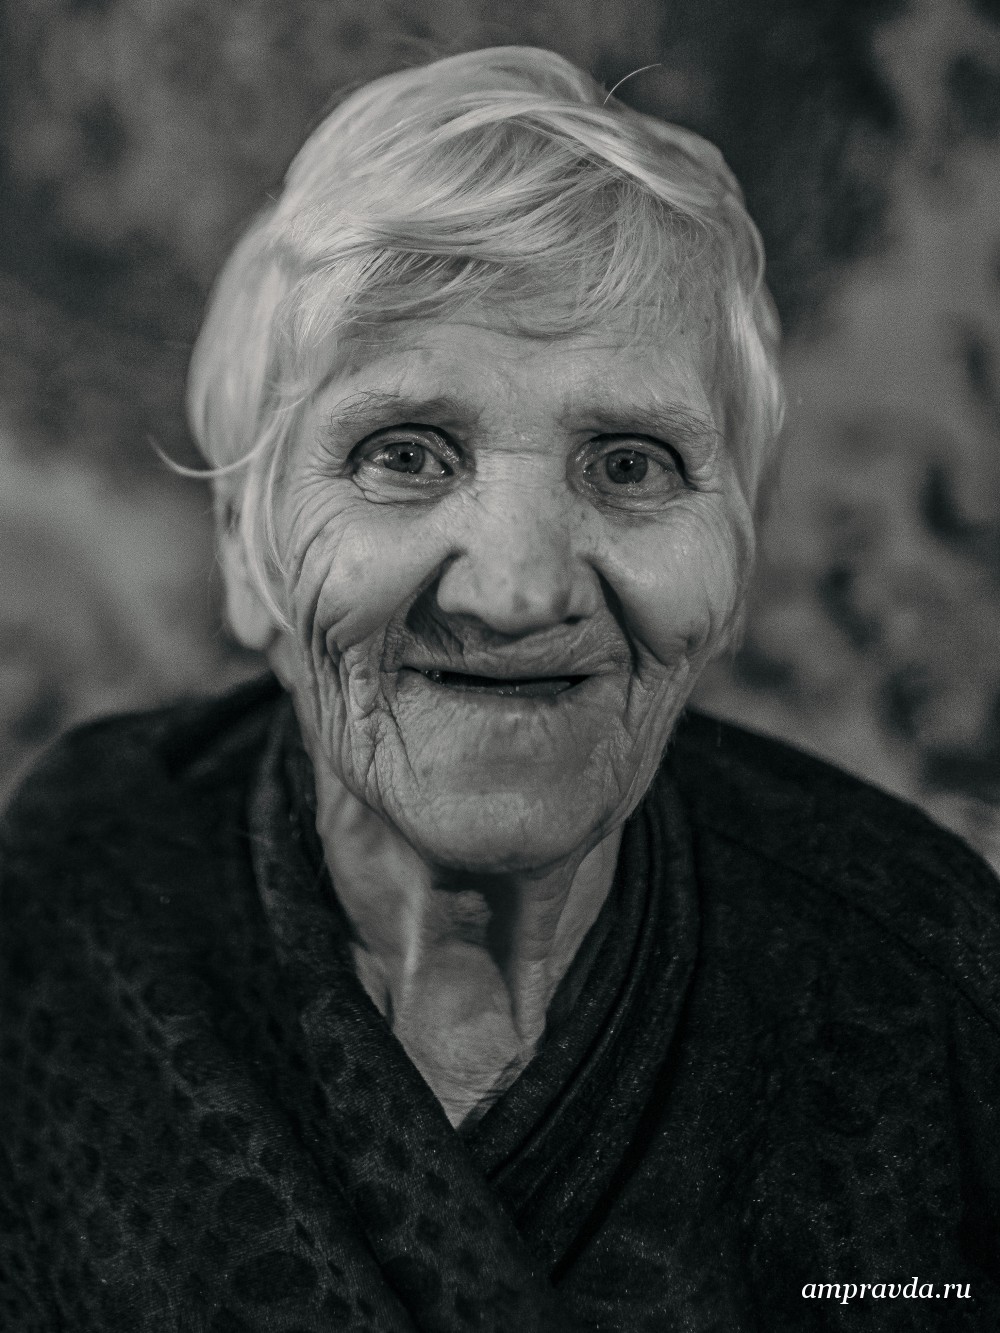 Сморщенная старушечья а глазки. Родные лица. Бабушка взгляд ярости. Донецк, старушка, глаза фото-арт.